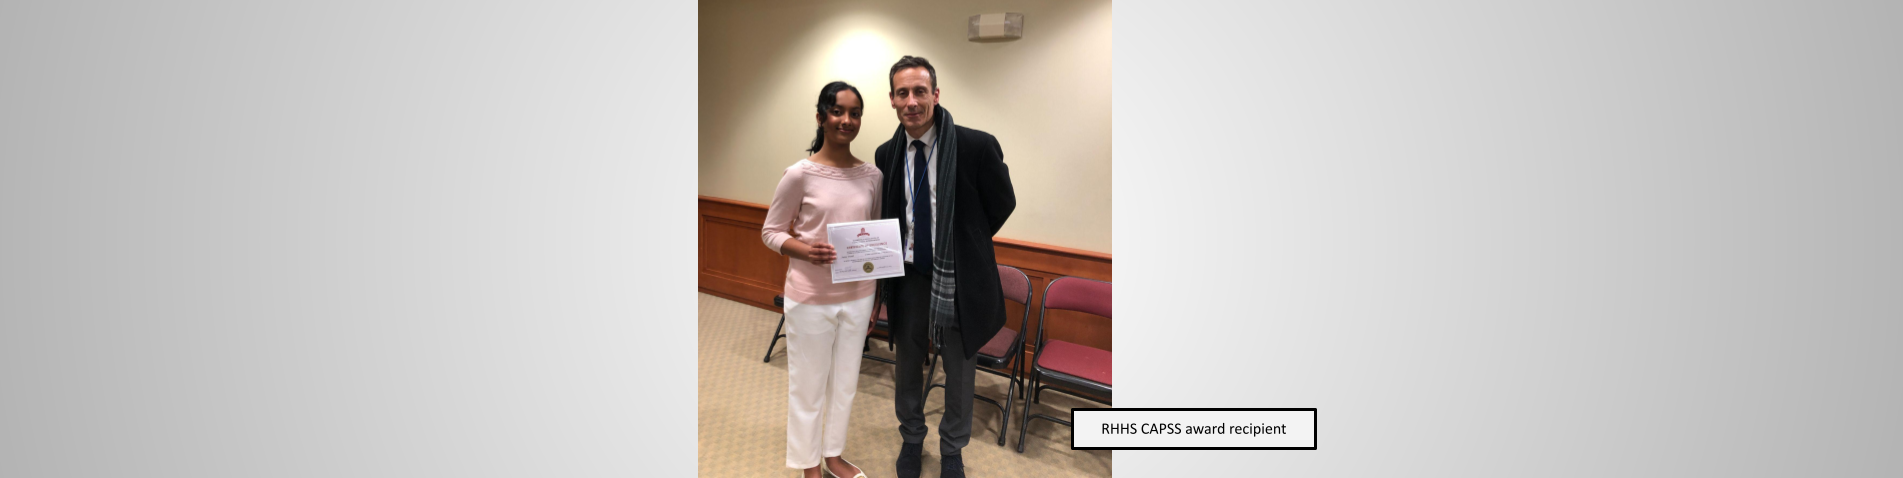 RHHS CAPSS award recipient